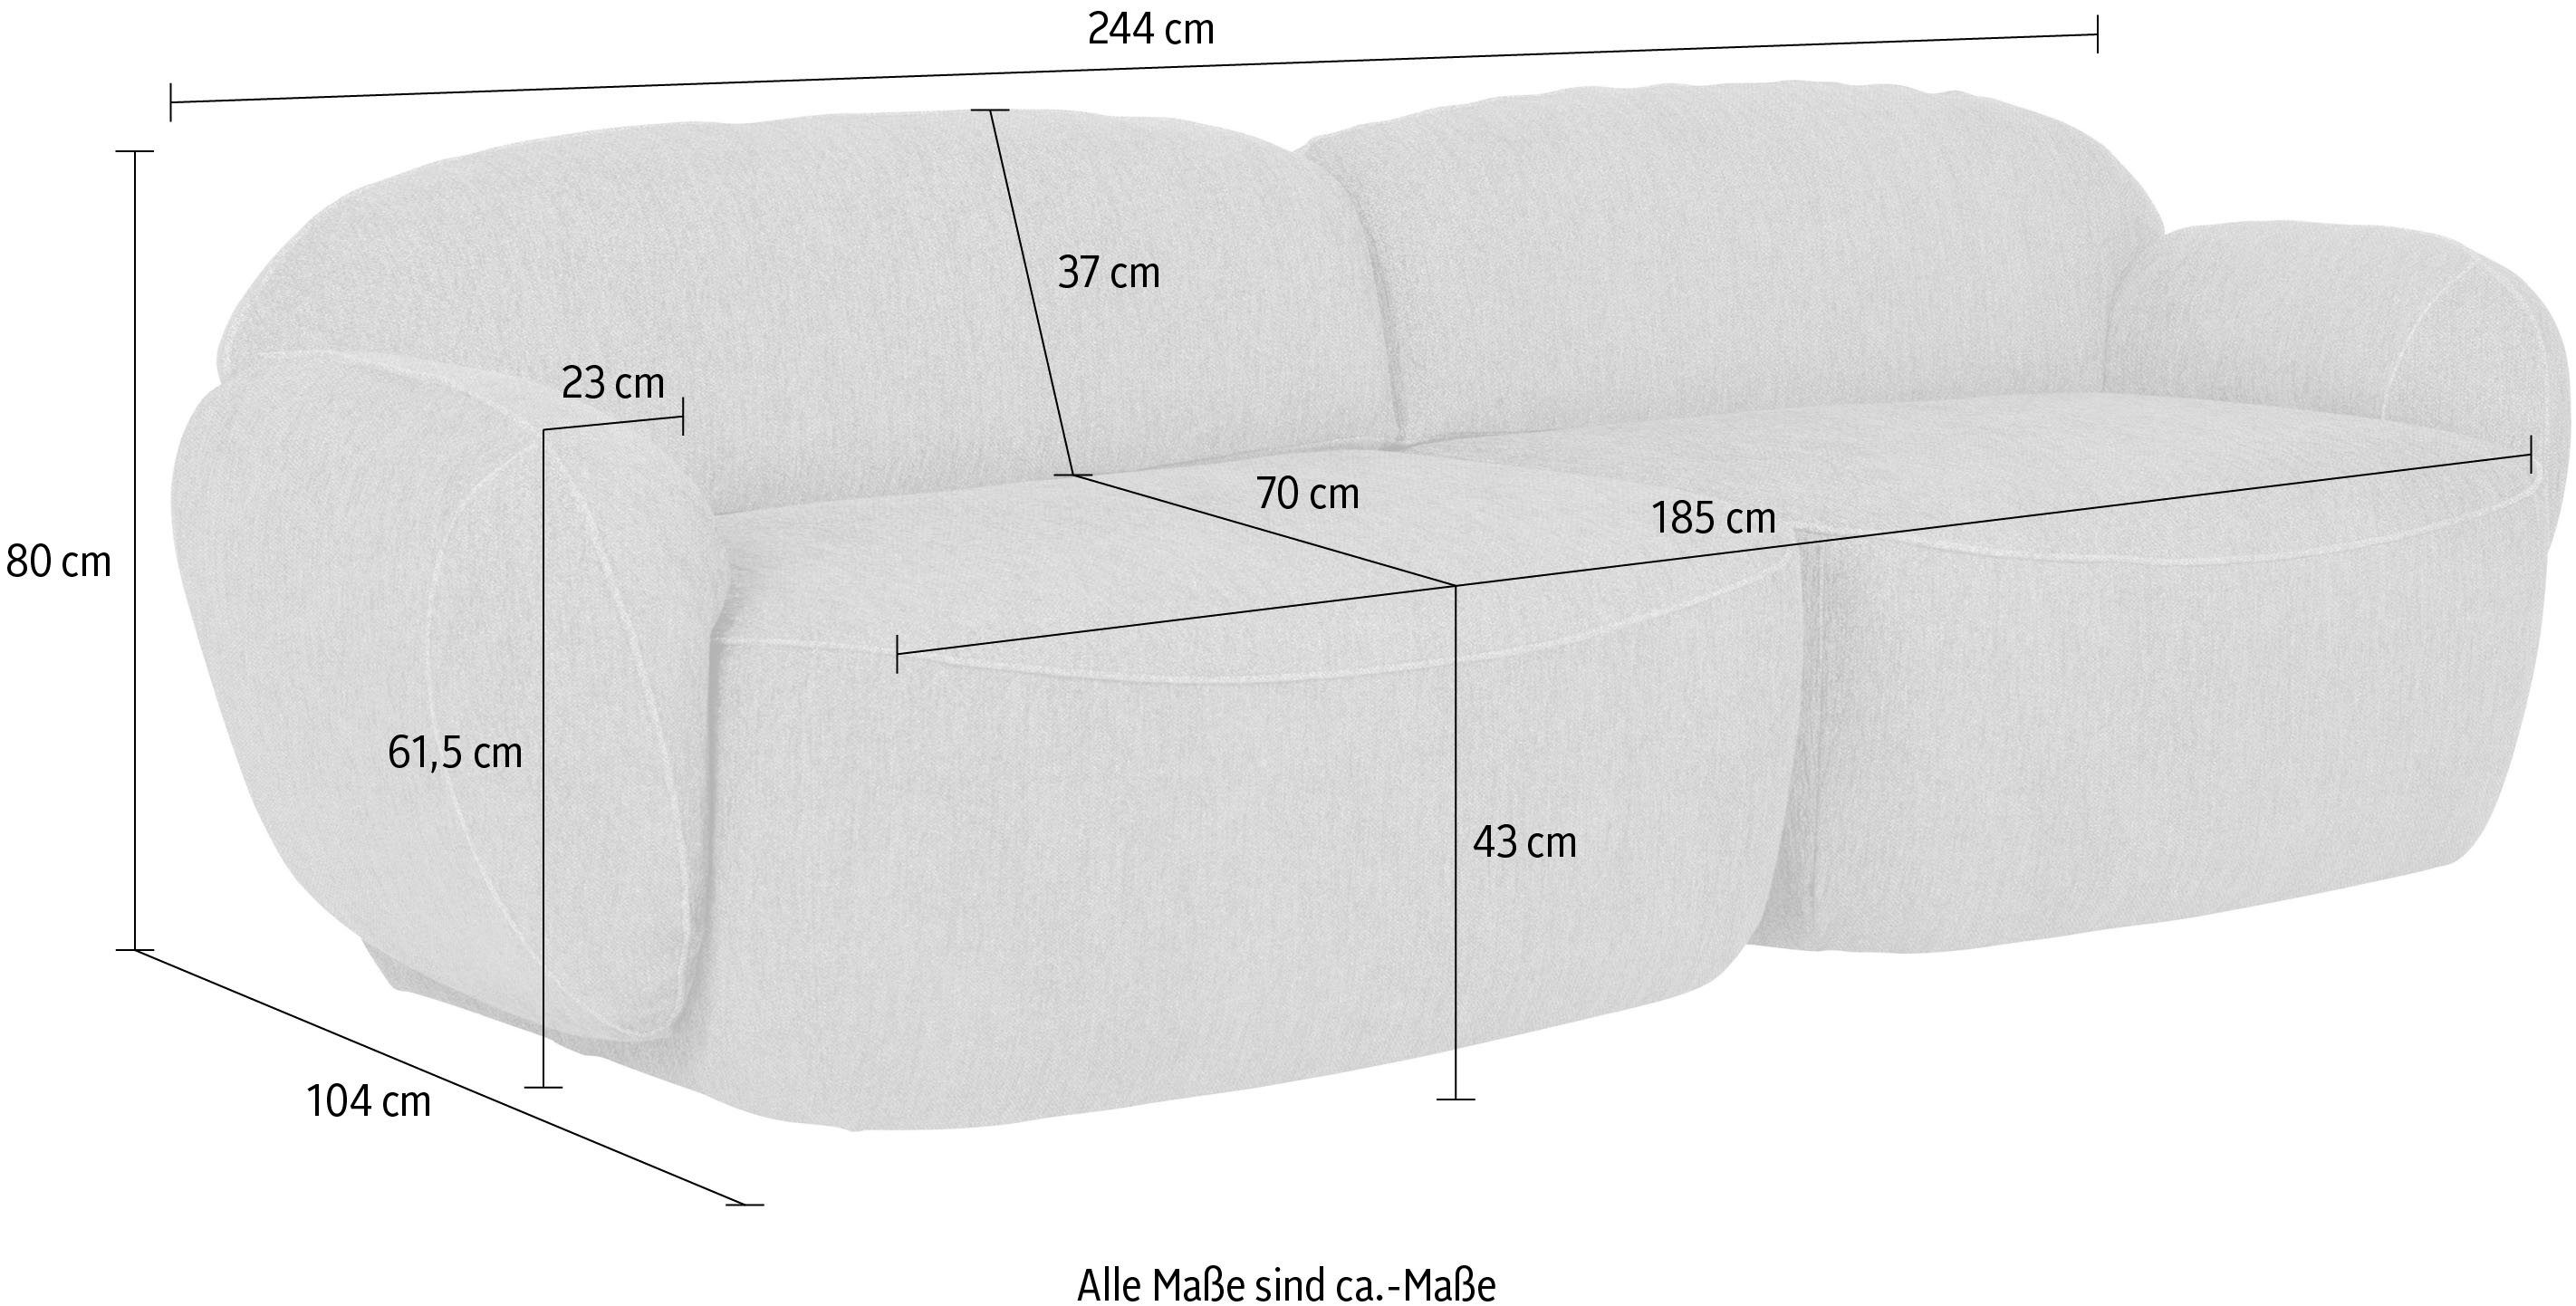 furninova Bubble, im komfortabel Memoryschaum, skandinavischen Design 2,5-Sitzer durch